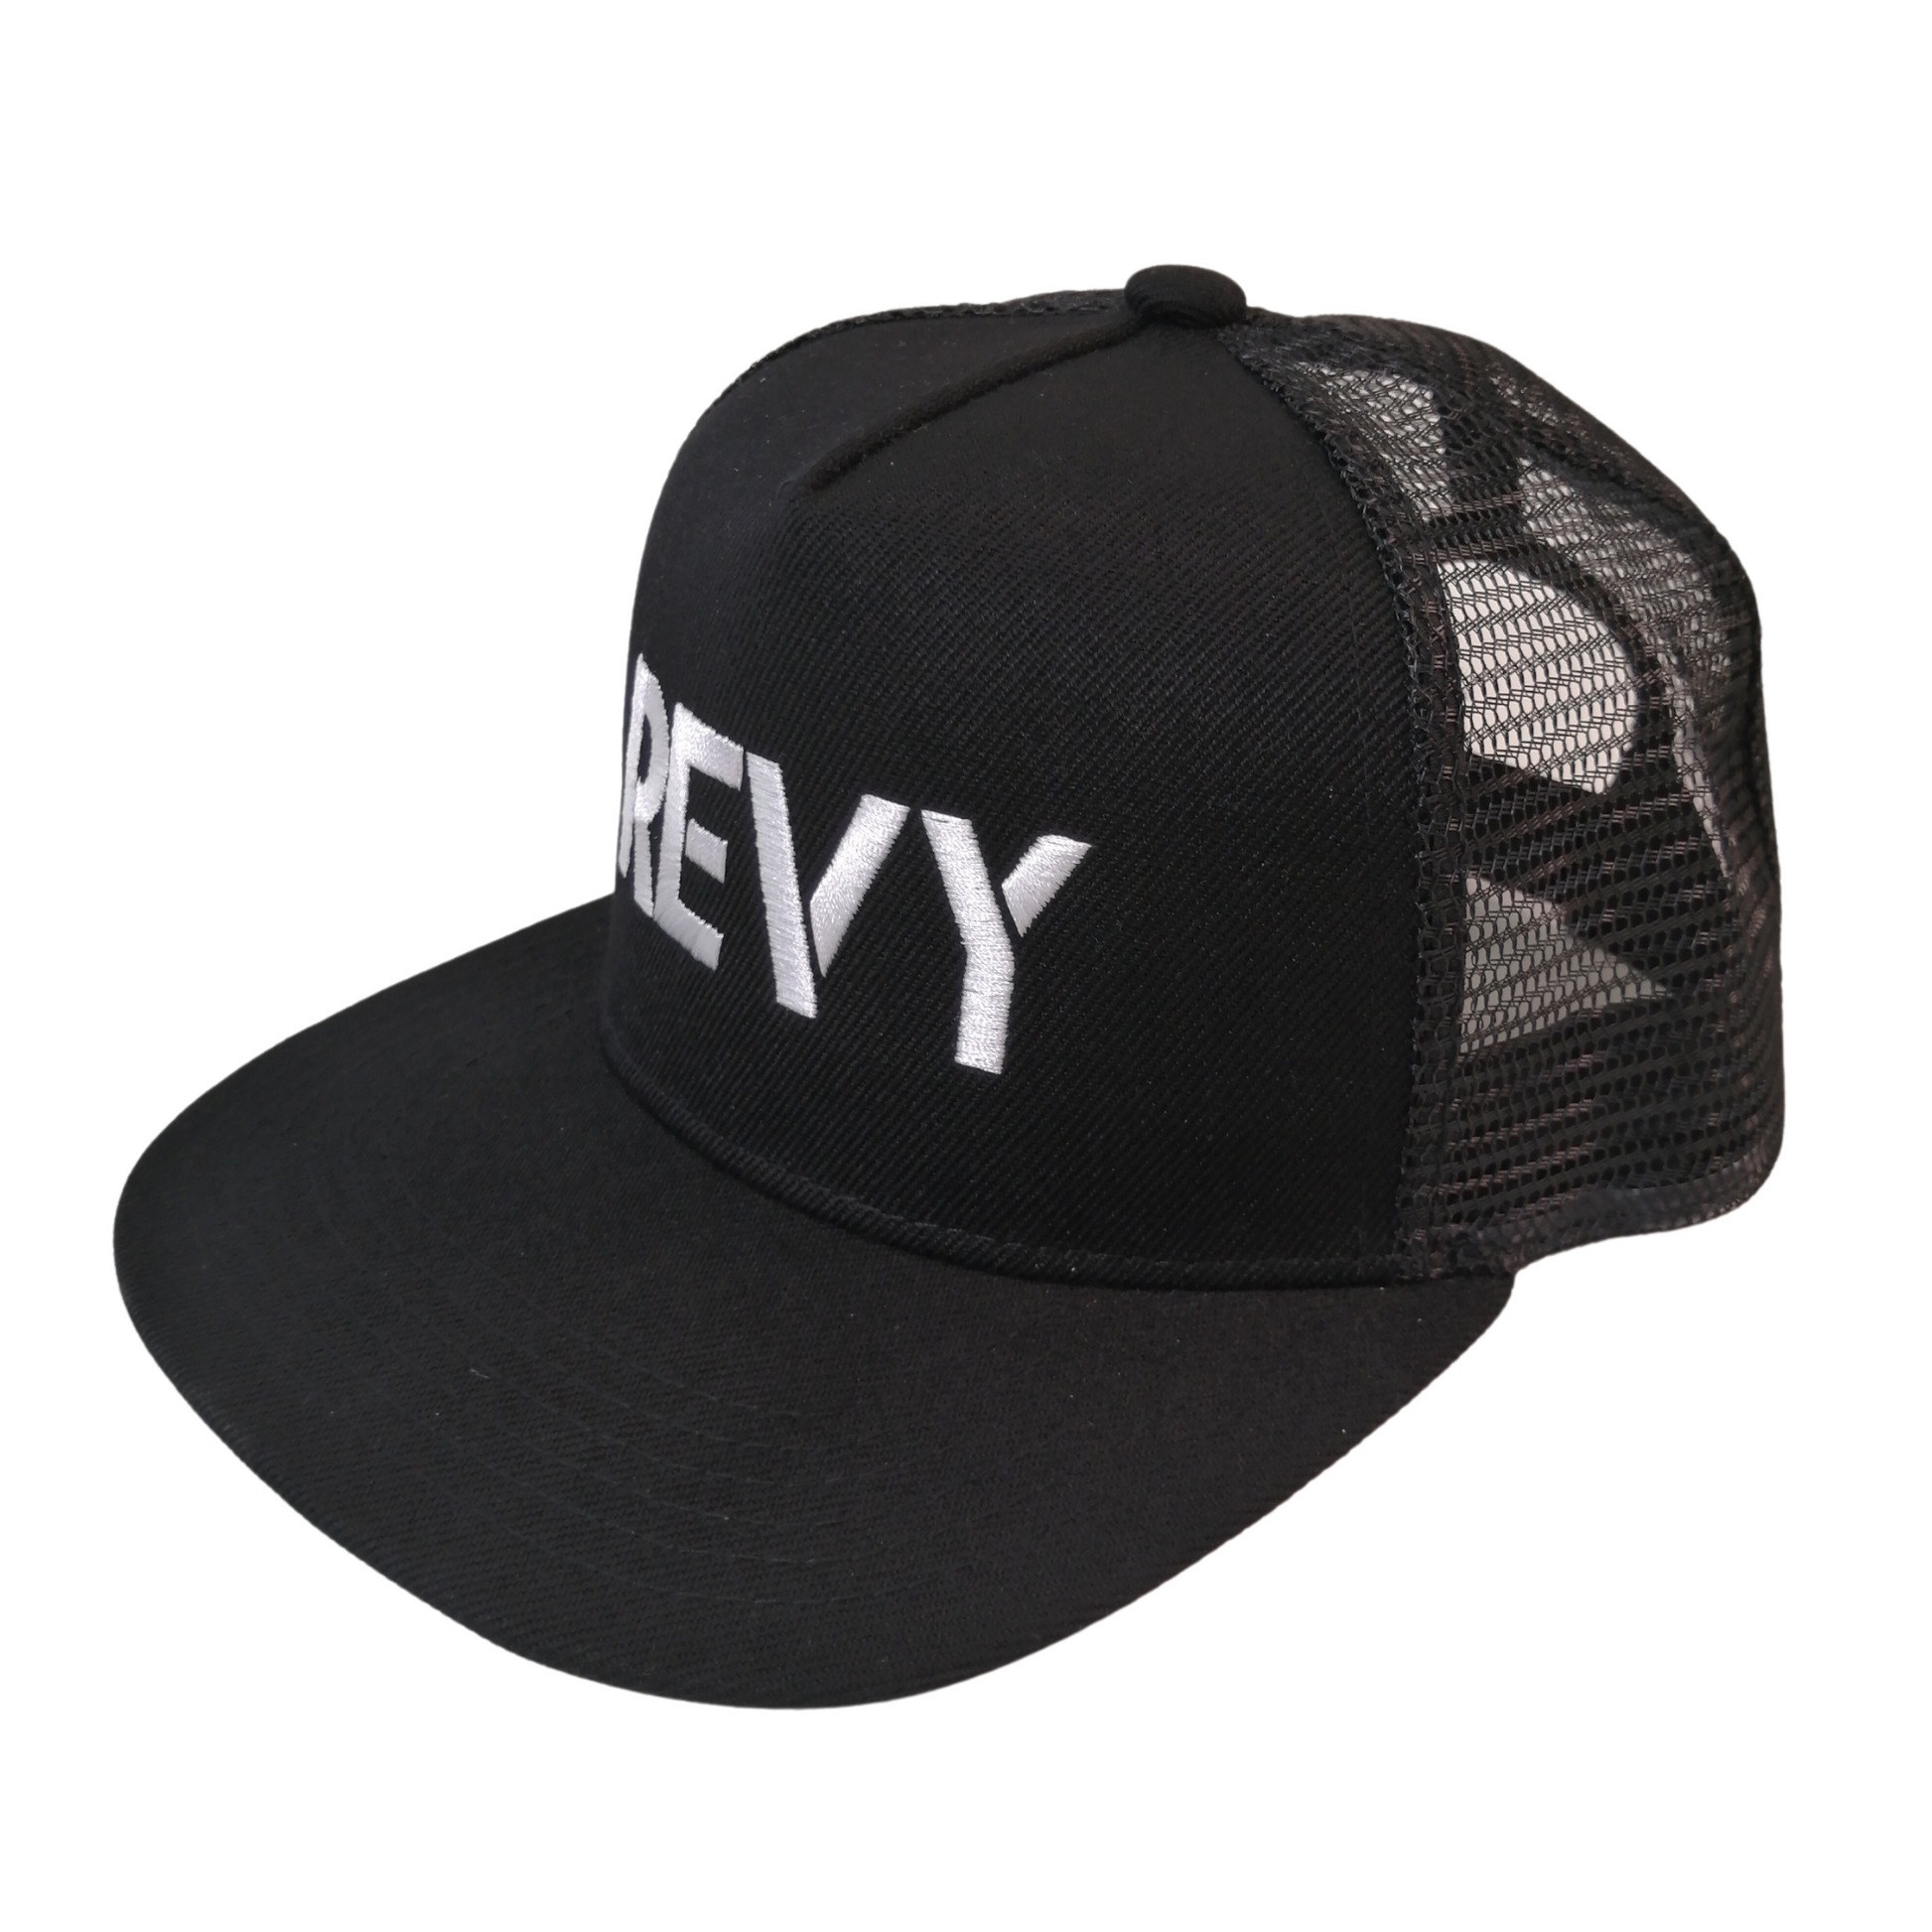 REVY. HAT, TRUCKER – Shop Revelstoke